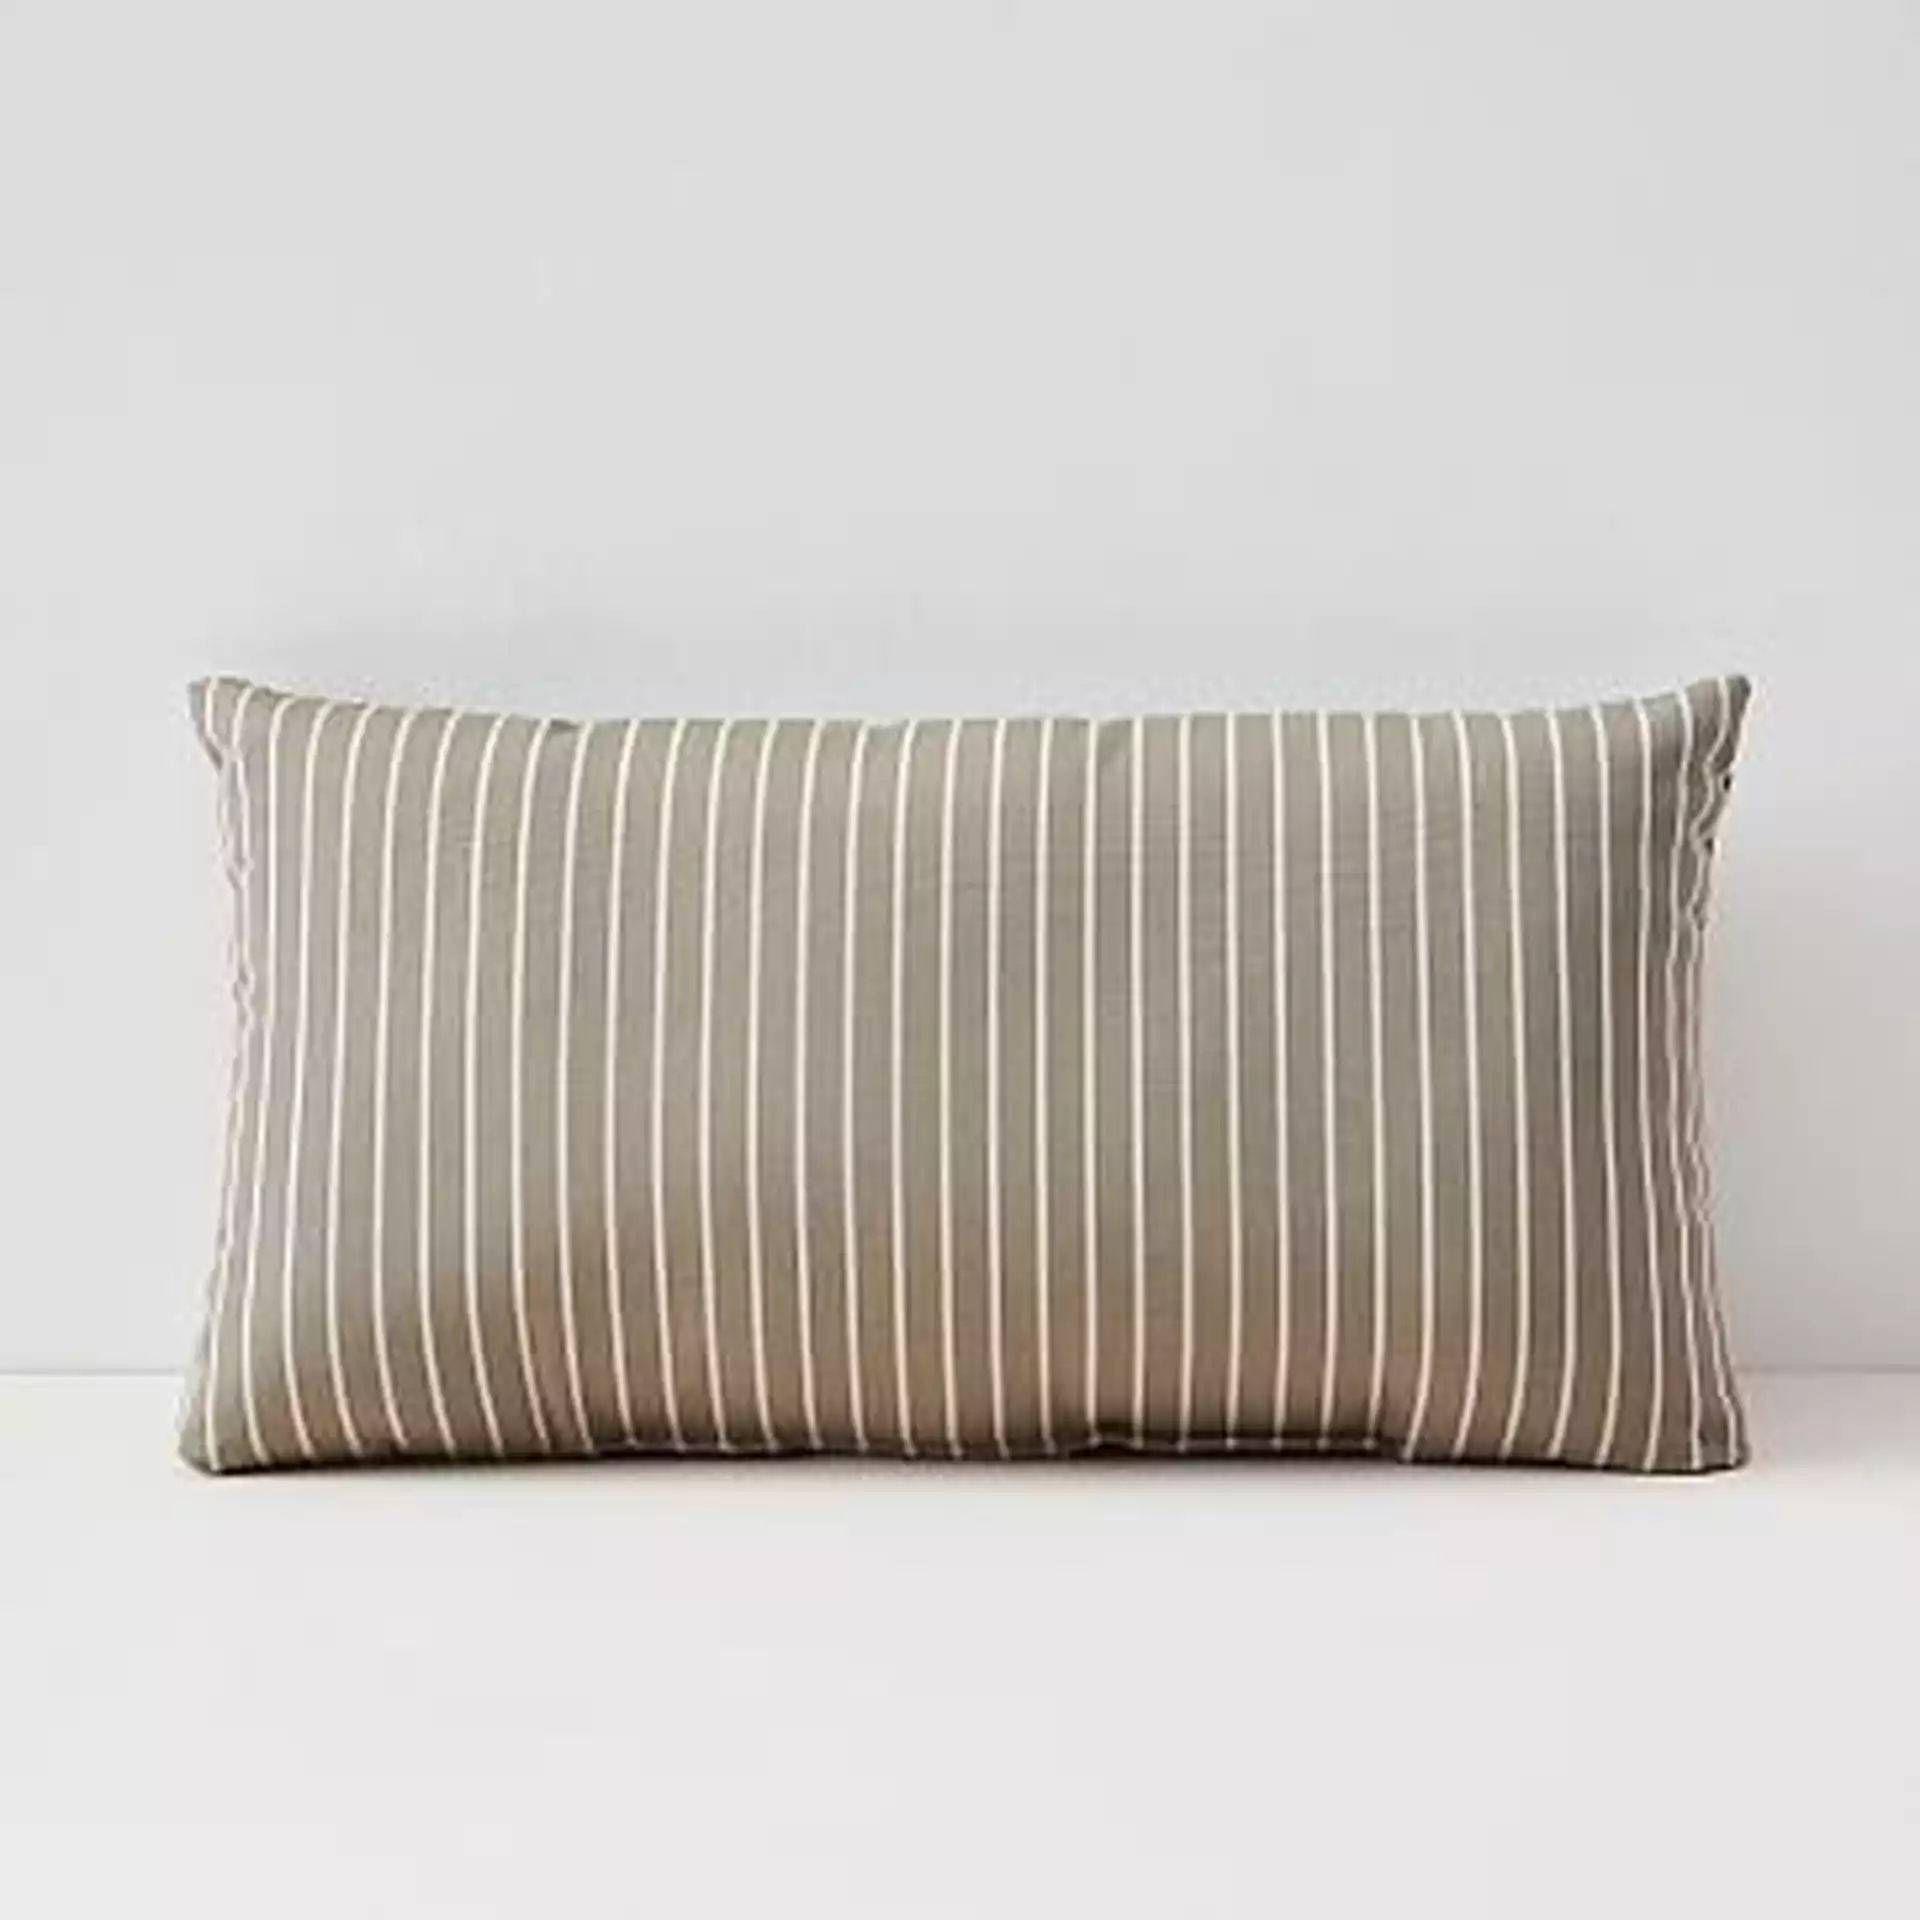 Sunbrella Indoor/Outdoor Striped Lumbar Pillow, Taupe, Set of 2, 12"x21"